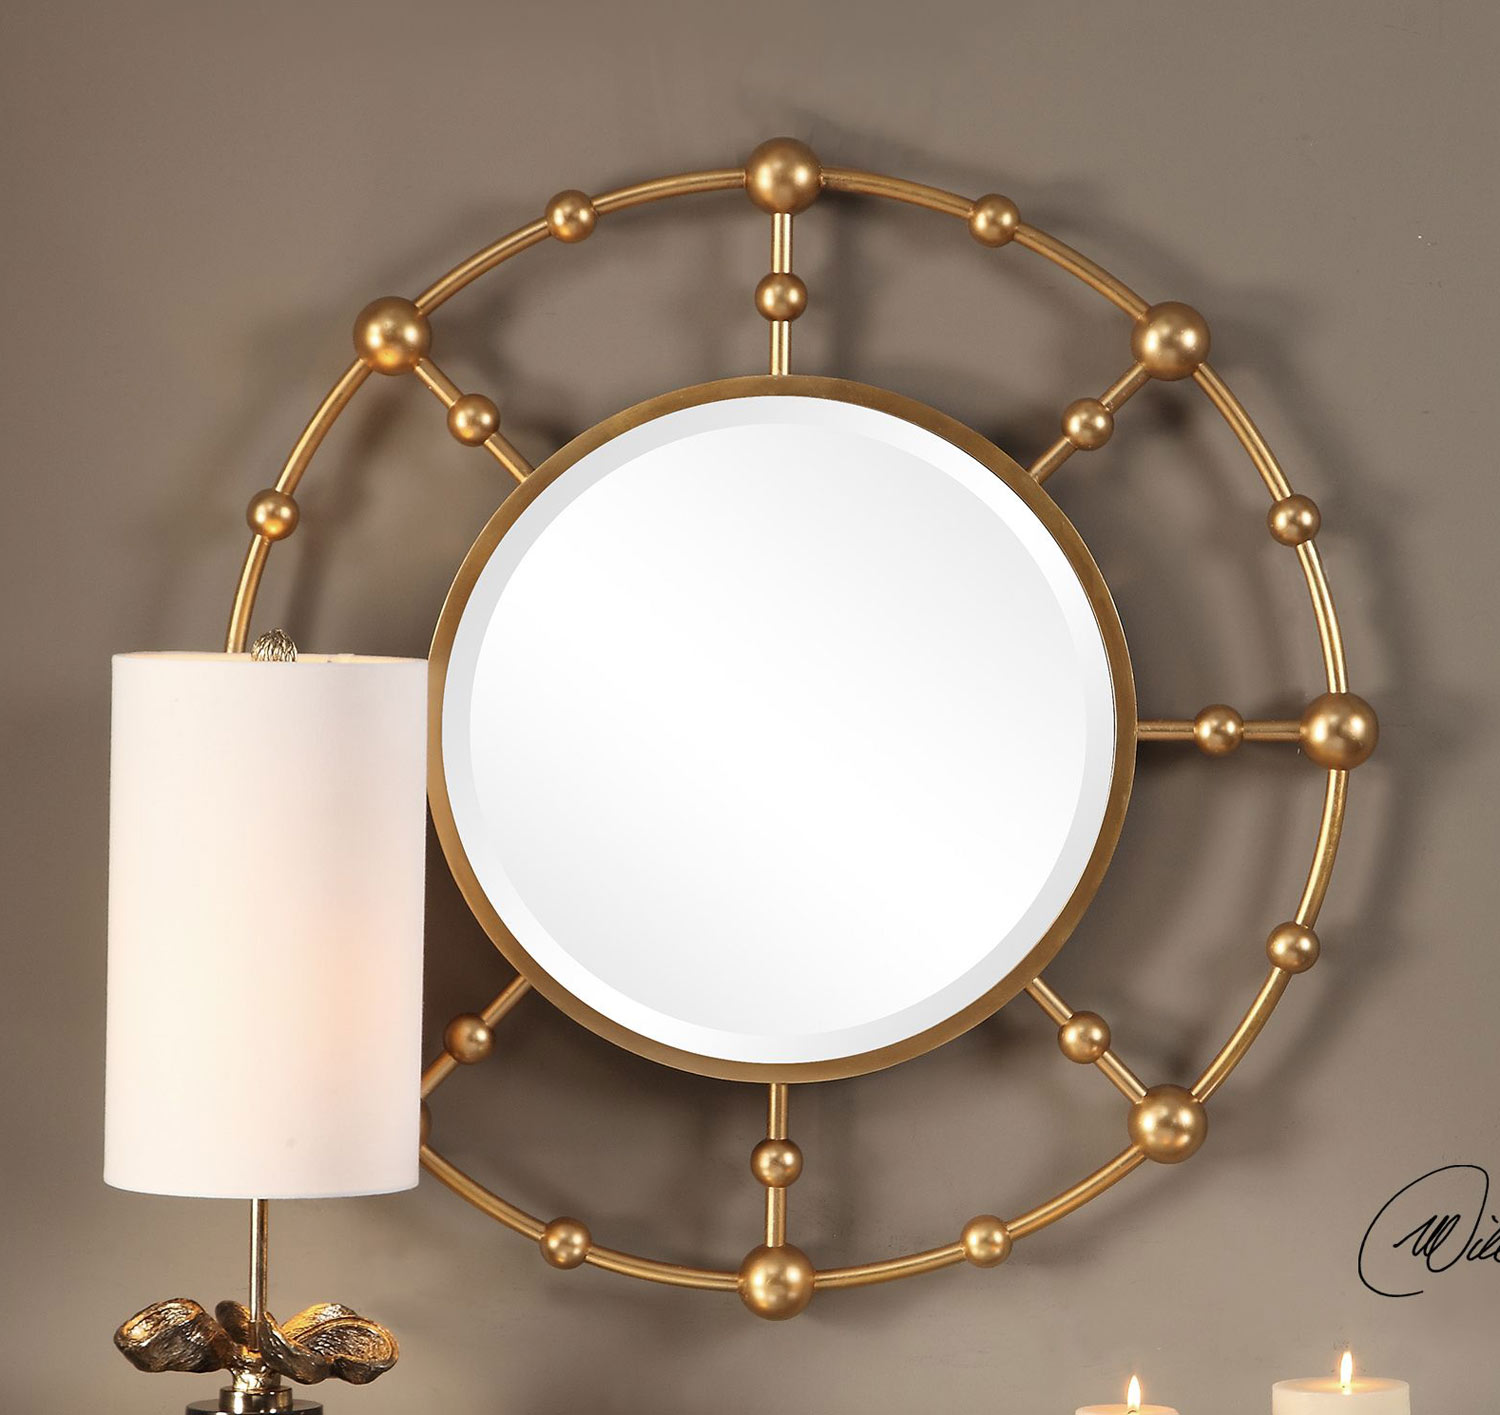 Uttermost Selim Round Mirror - Gold